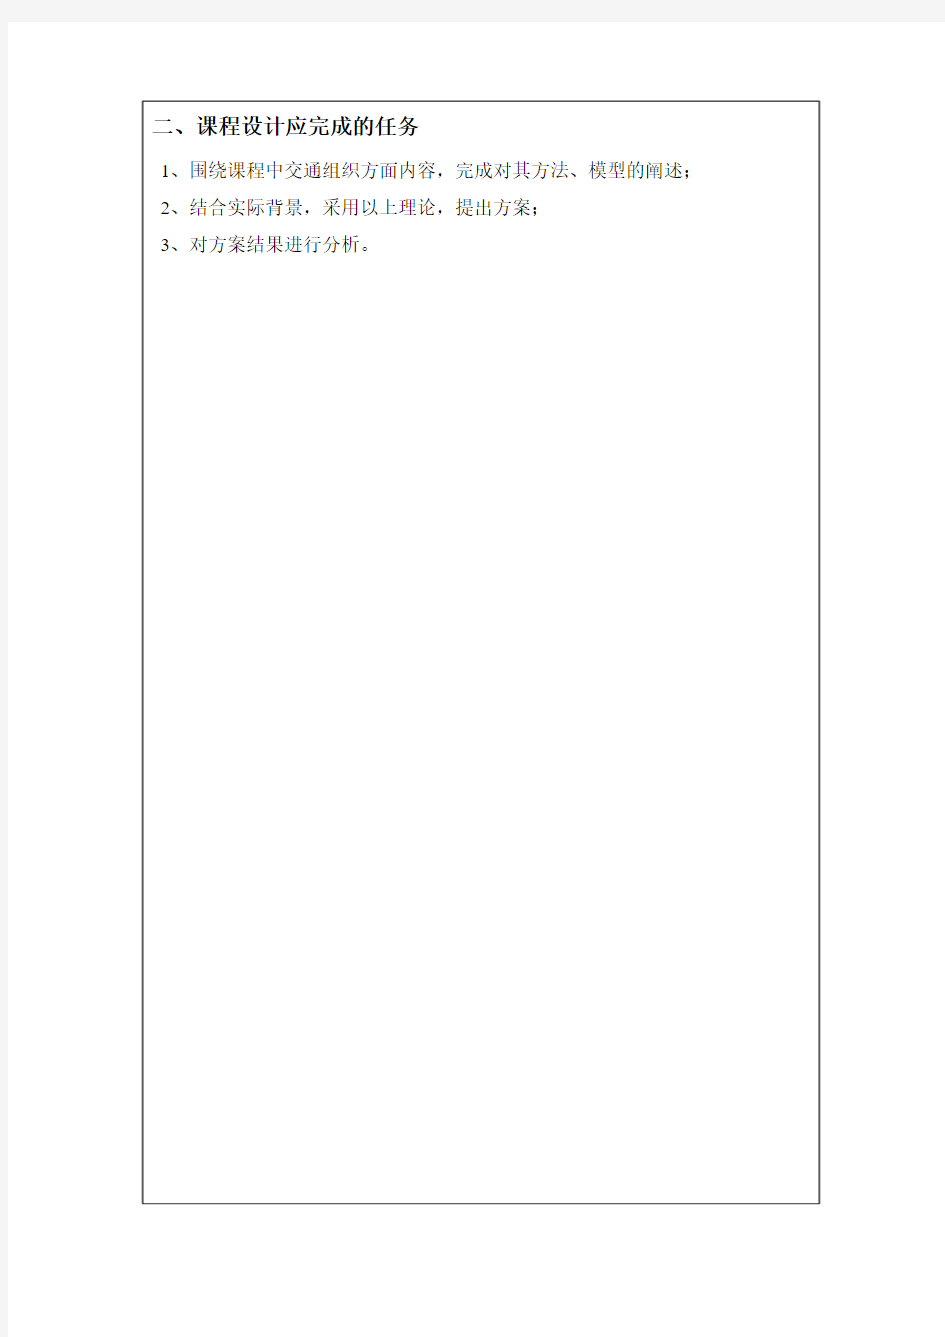 长沙理工大学课程设计任务书(交运-交通运输组织学)